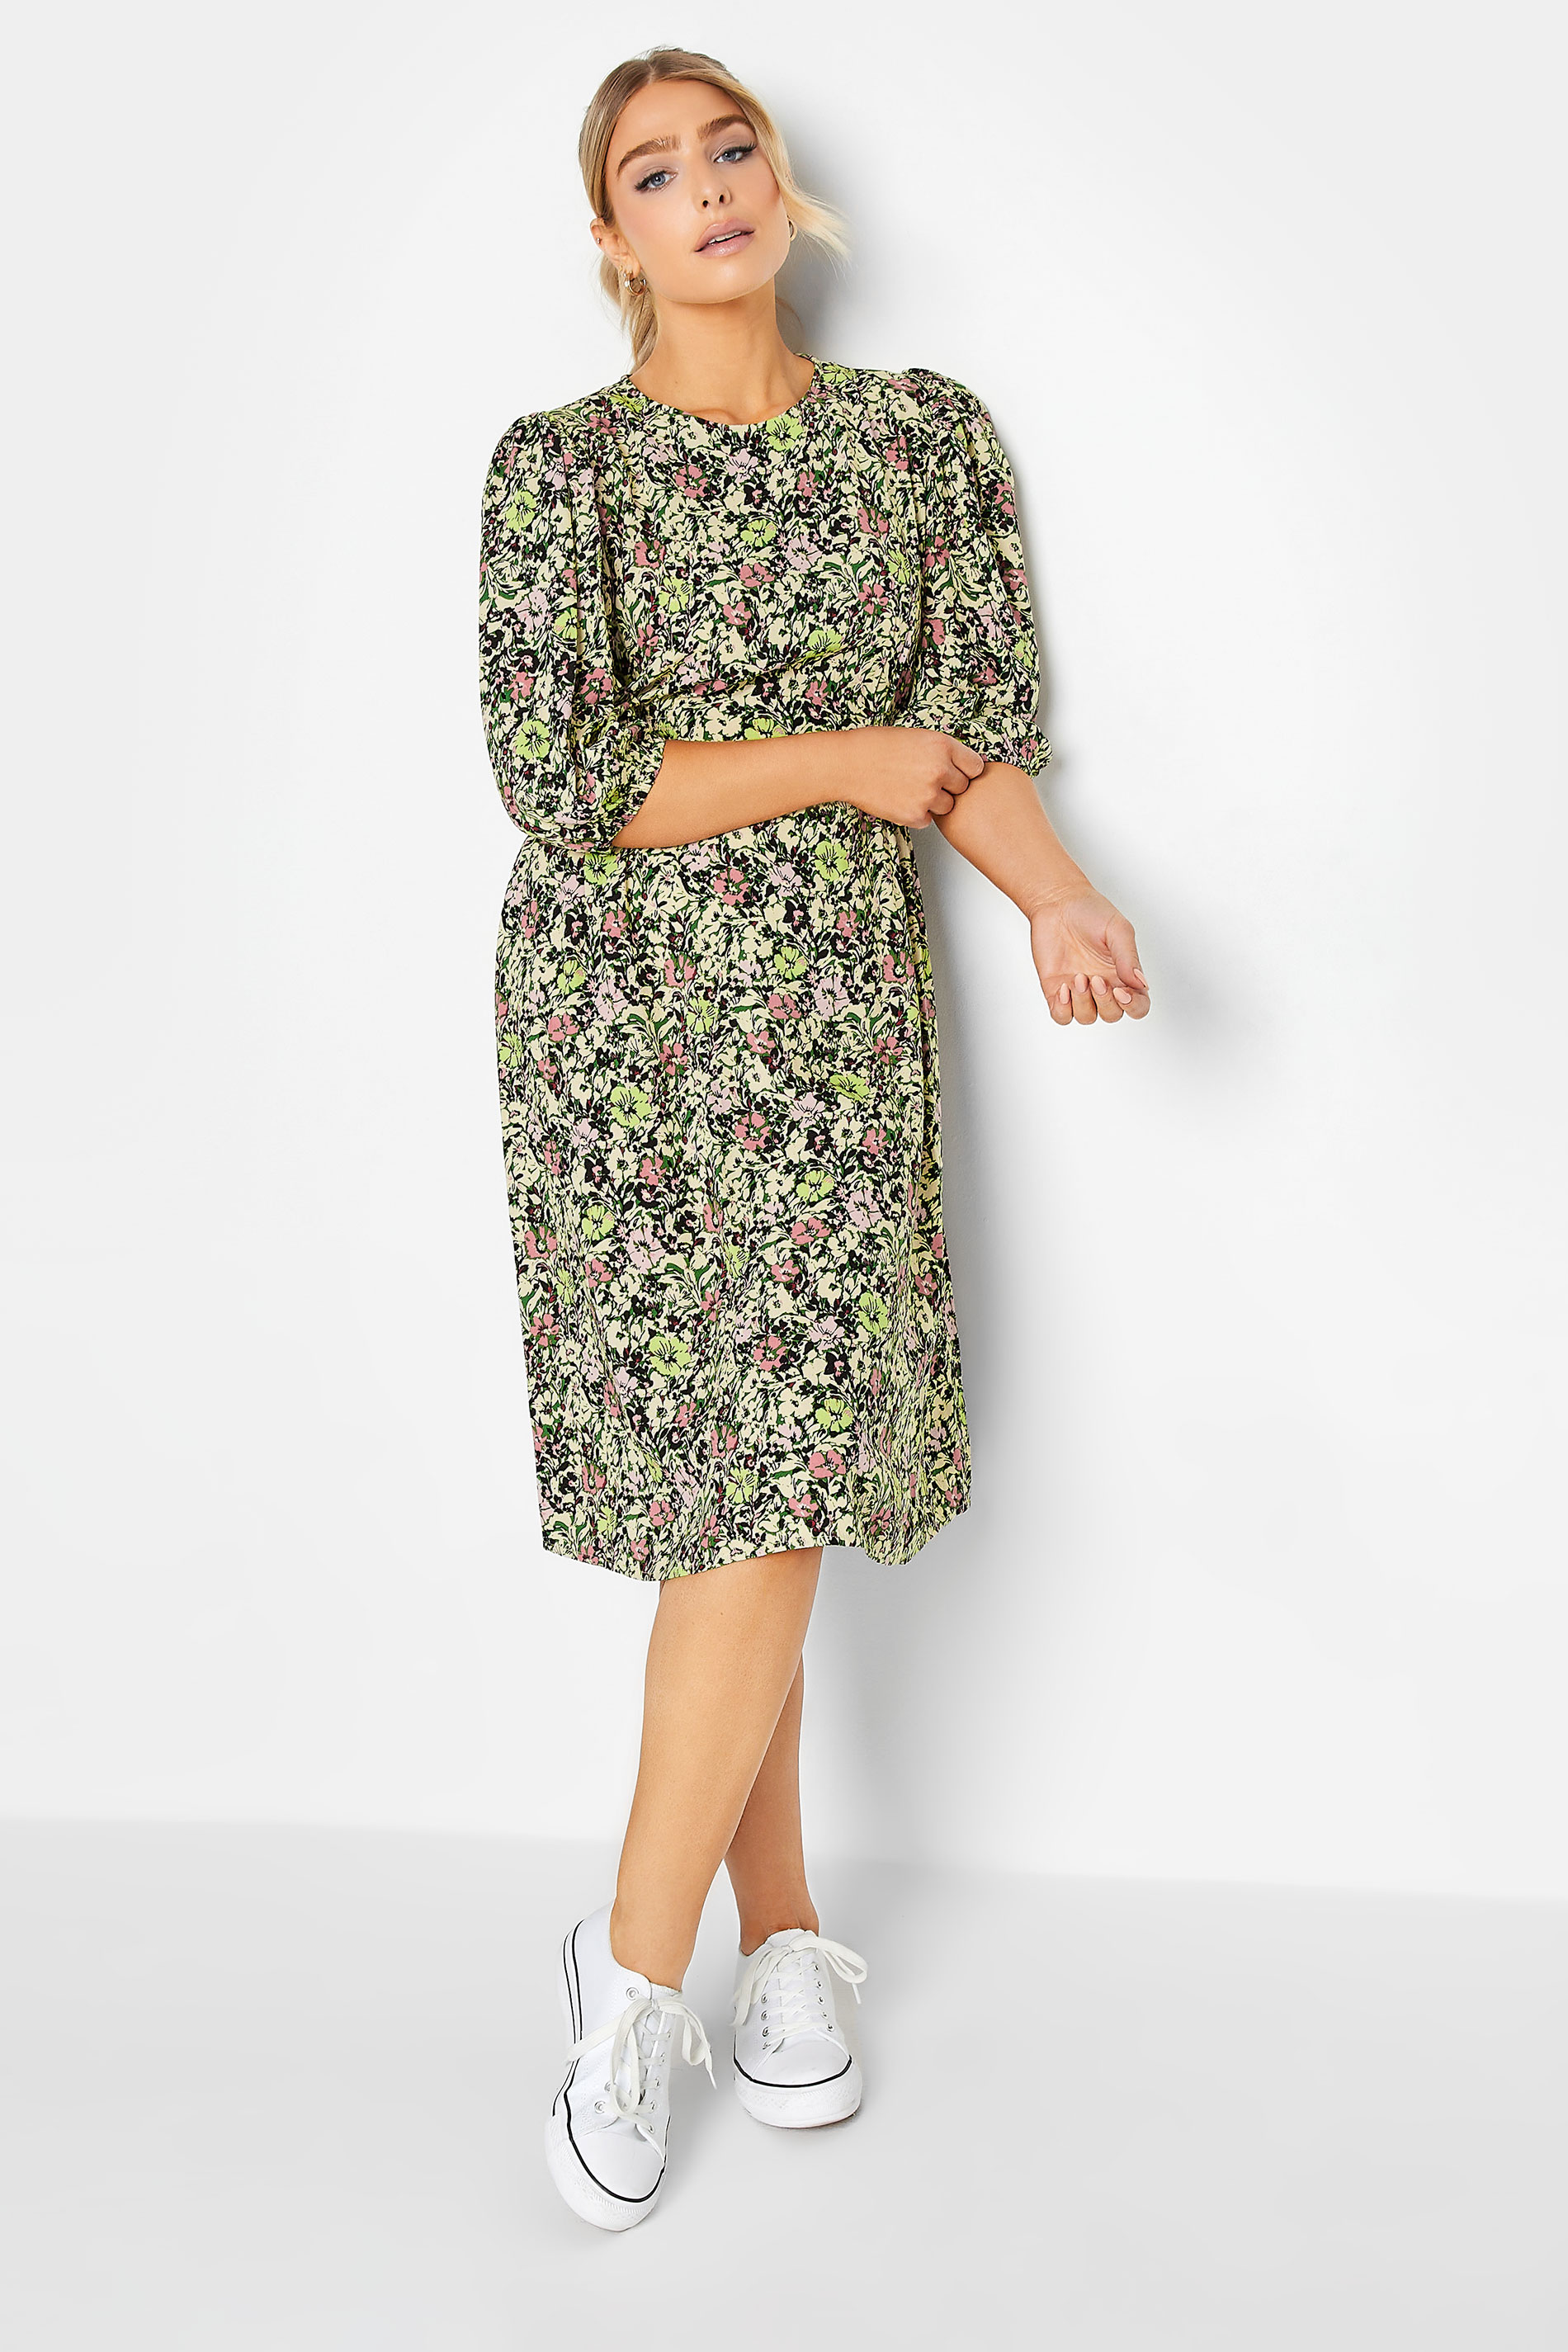 M&Co Green Floral Print Midi Dress | M&Co  1